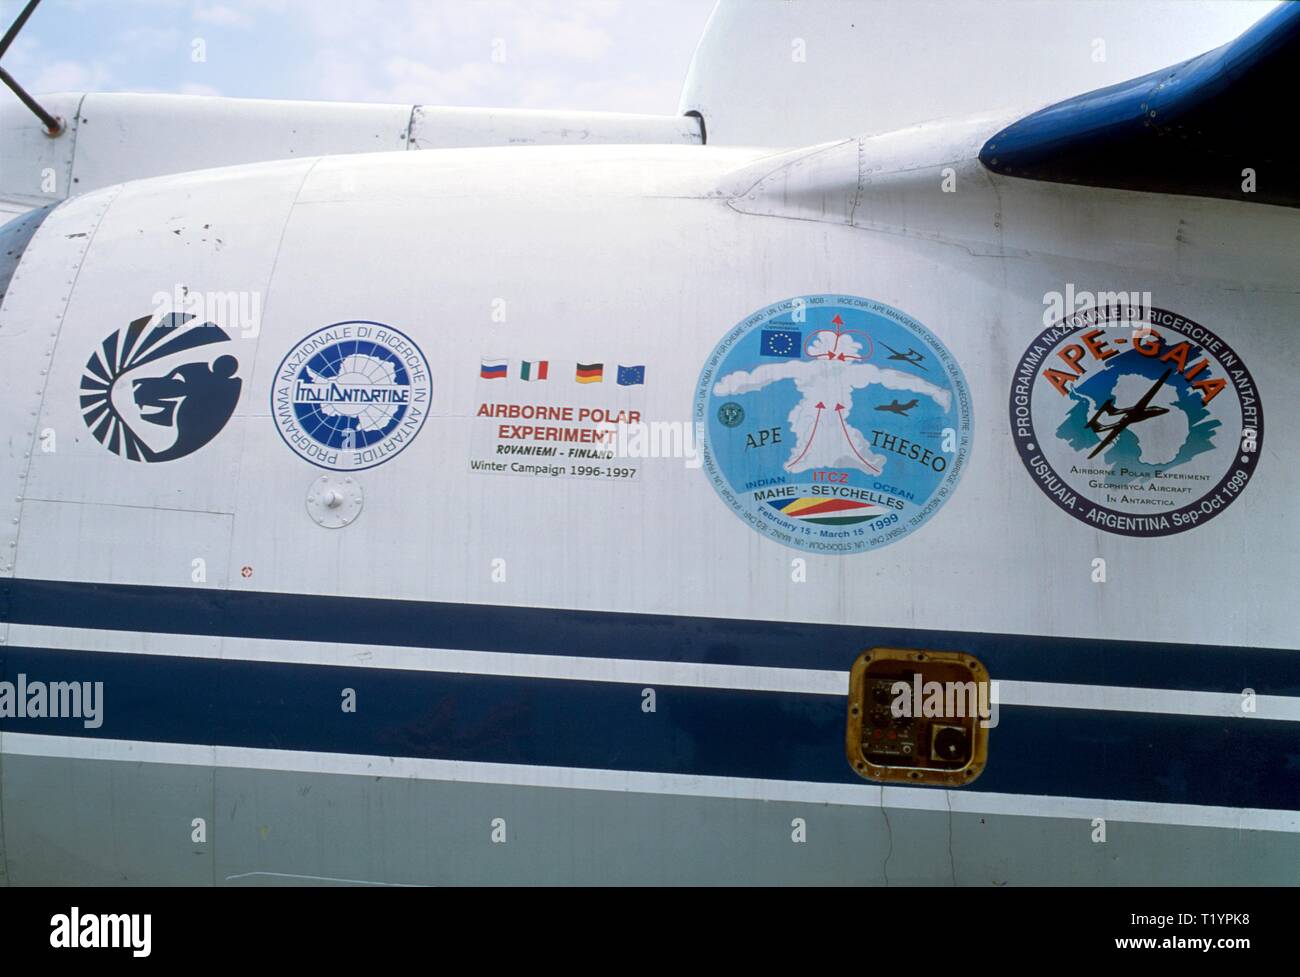 Miassichtchev M-55, l'ancien militaire soviétique à partir de 1992, l'avion espion employé par le Consortium européen scientifique pour des recherches sur l'atmosphère Geophysica ozone stratosphérique, stratosphère-troposphère l'interaction et ses répercussions sur le réchauffement climatique Banque D'Images